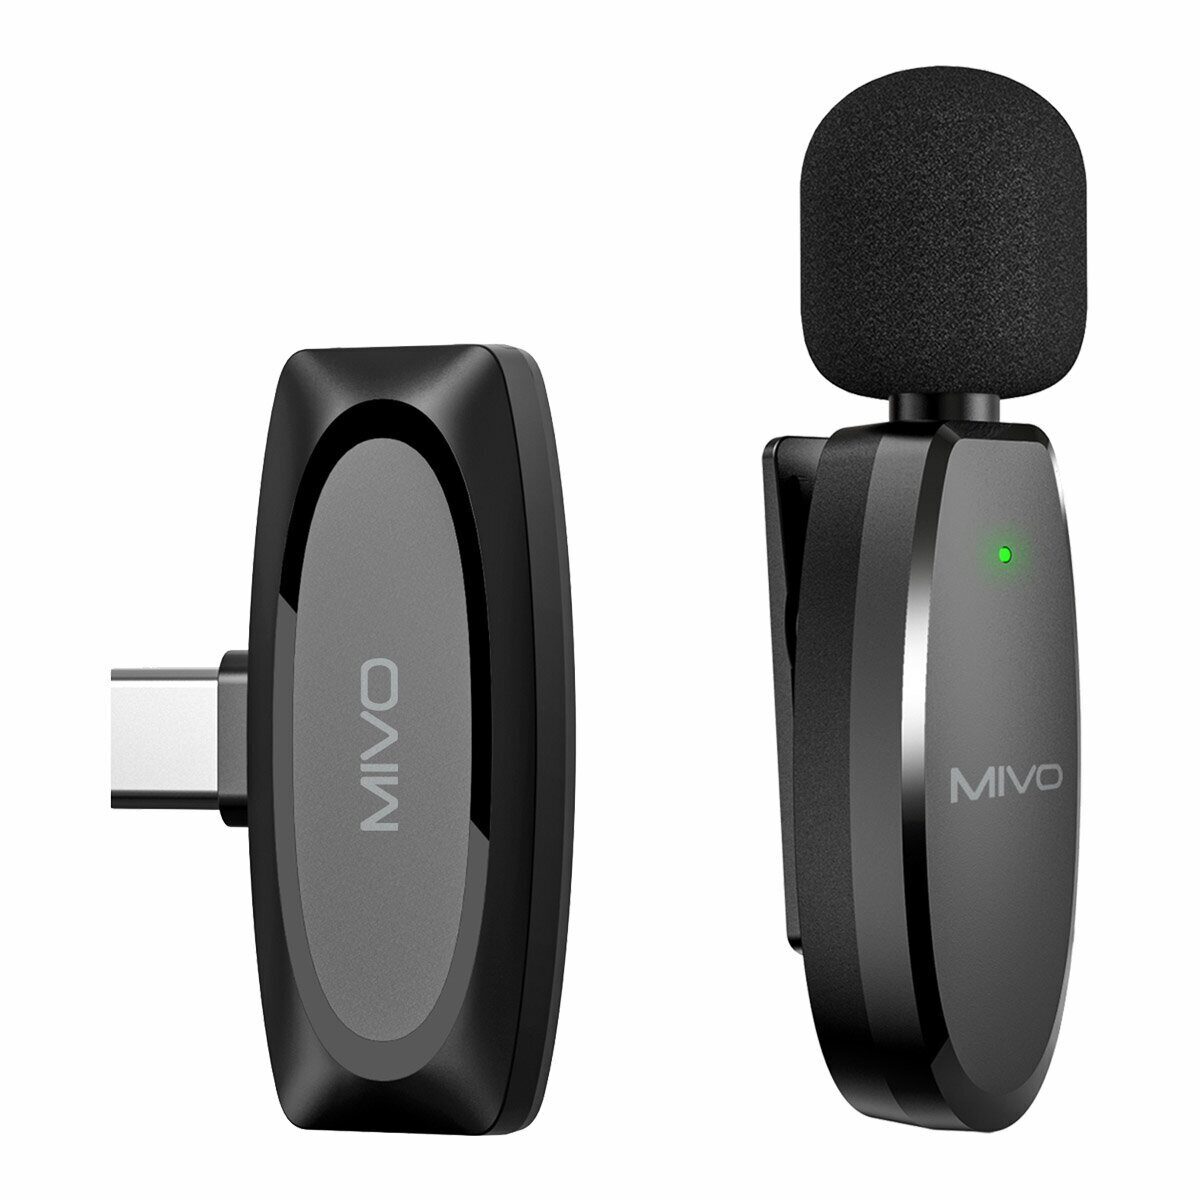 Беспроводной Bluetooth петличный микрофон Mivo MK-610T (Type-C) микрофон беспроводной mobility mmi 13